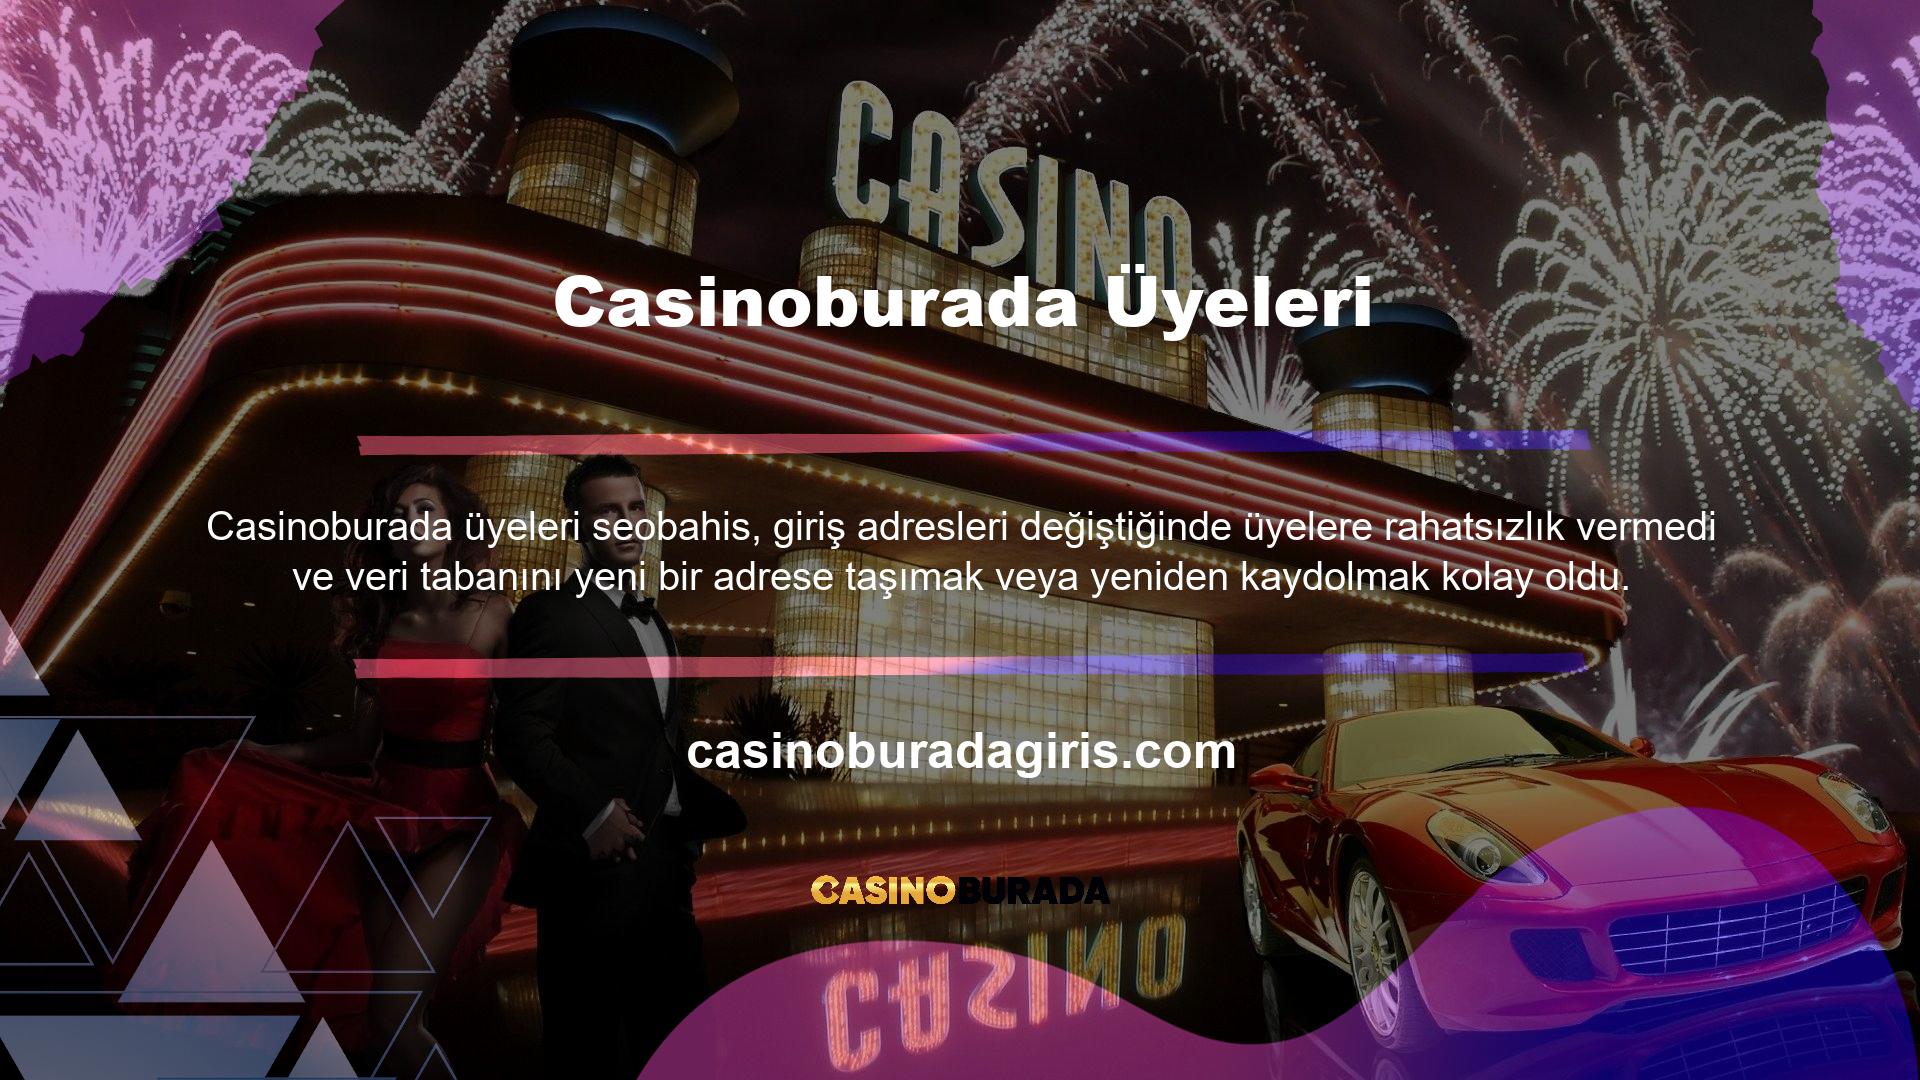 Casinoburada güvenilir ortamına yatırımınızı ikiye katlamak için üye bilgilerinizi kullanarak hesabınıza giriş yapmanız yeterlidir